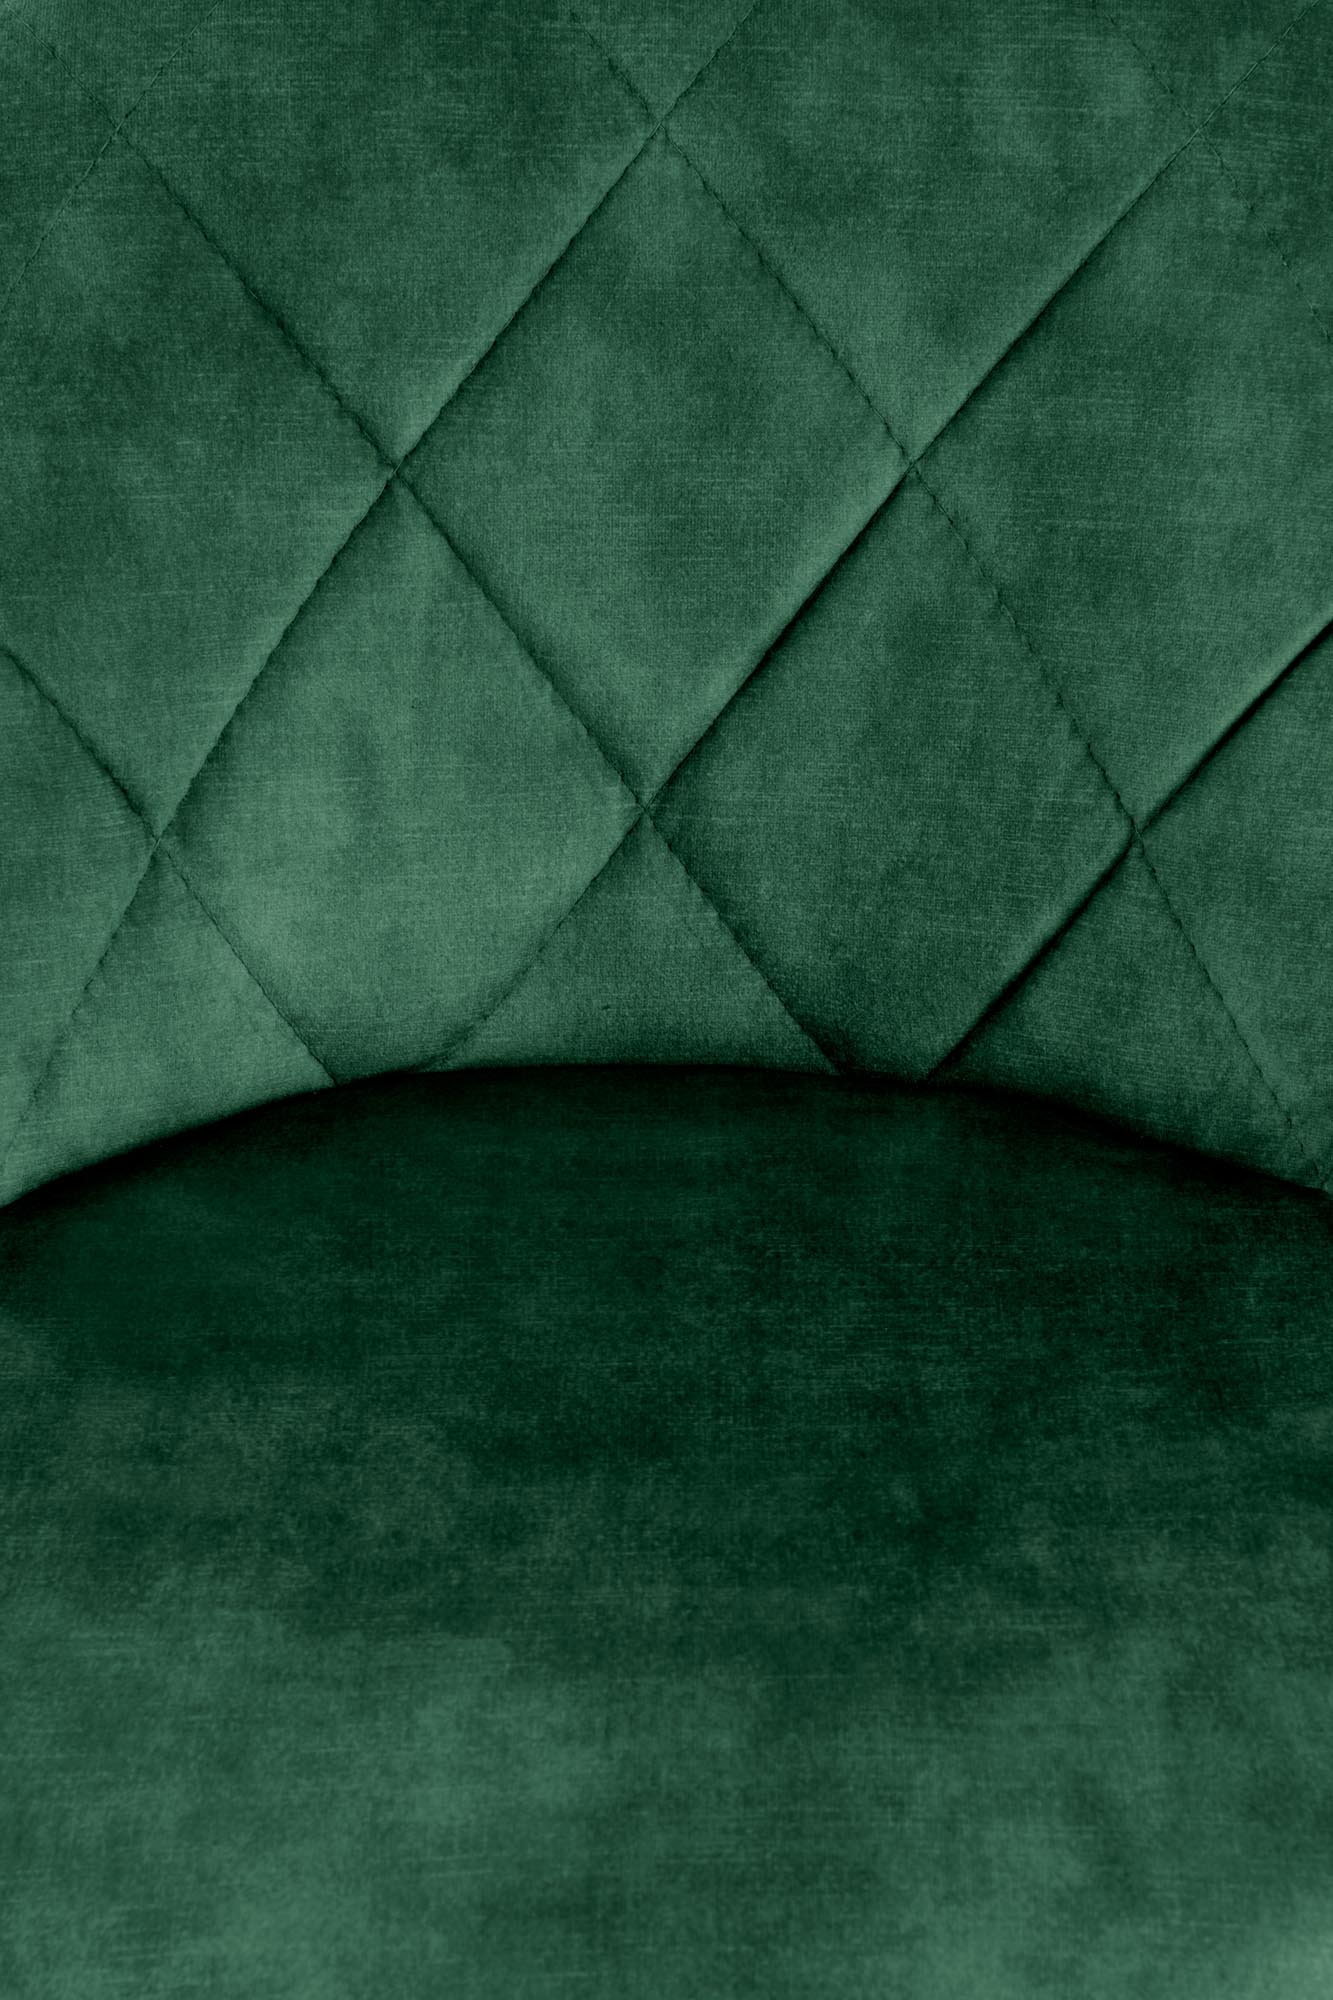 H101 Barová Stolička tmavý Zelený h101 Barová stolička tmavý Zelený